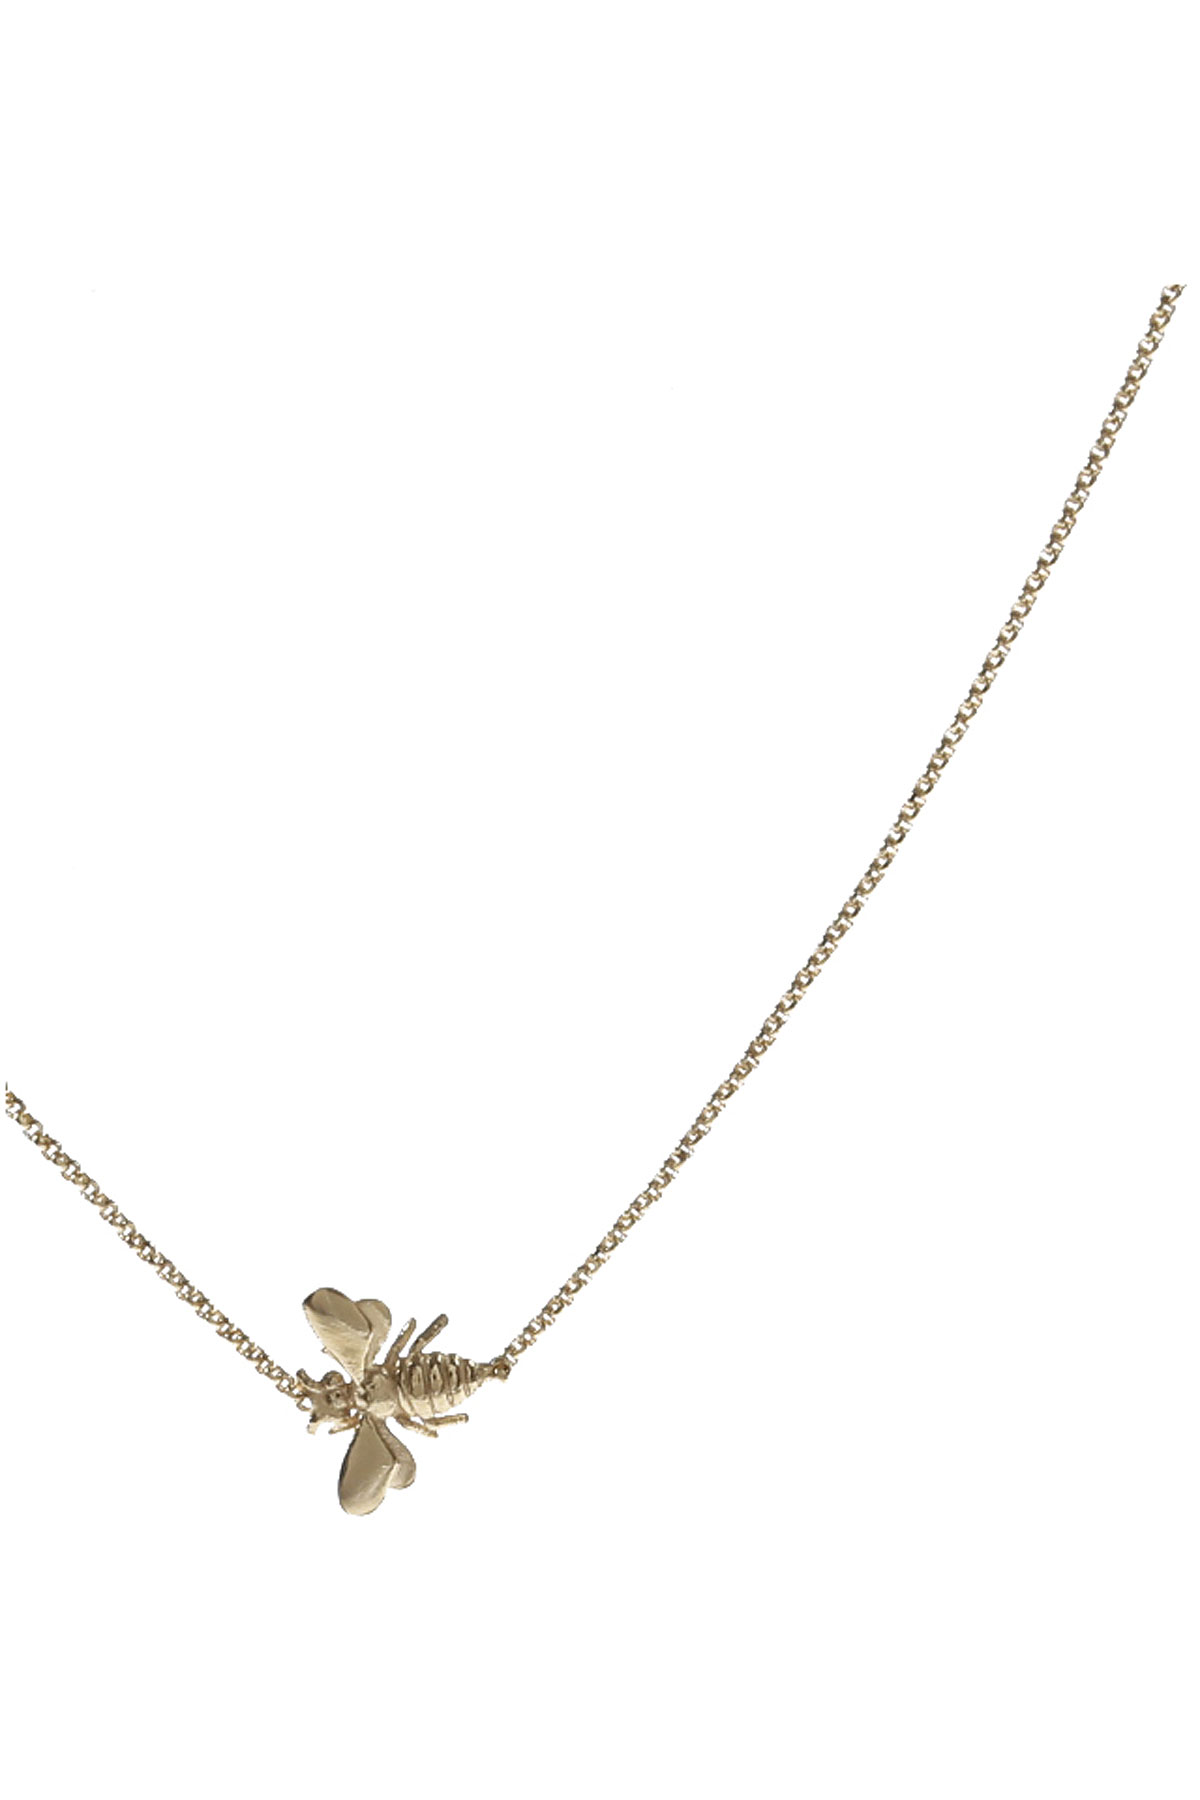 Francesca Angelone Halskette für Damen Günstig im Sale, Goldfarben, Silber 925, 2017